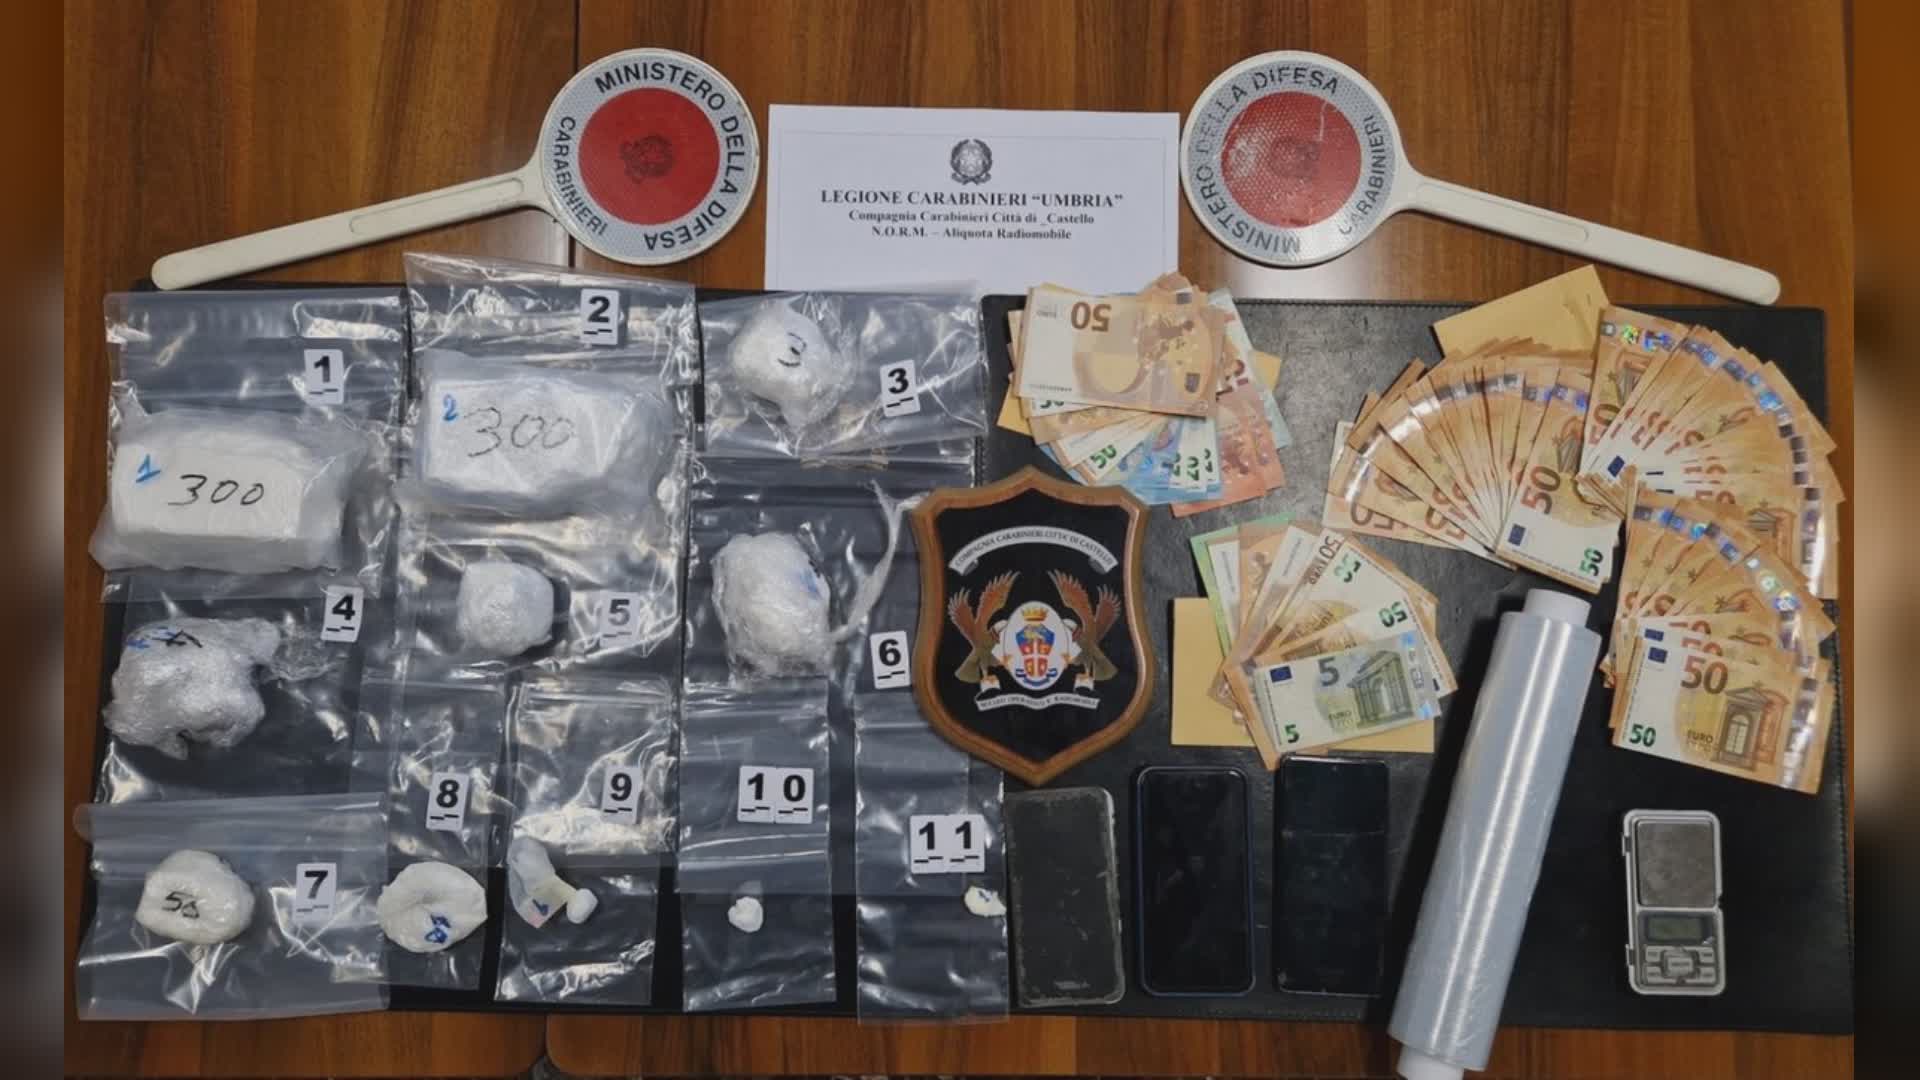 Spaccio droga, 2 arresti dai Carabinieri. Sequestrato 1 kg cocaina